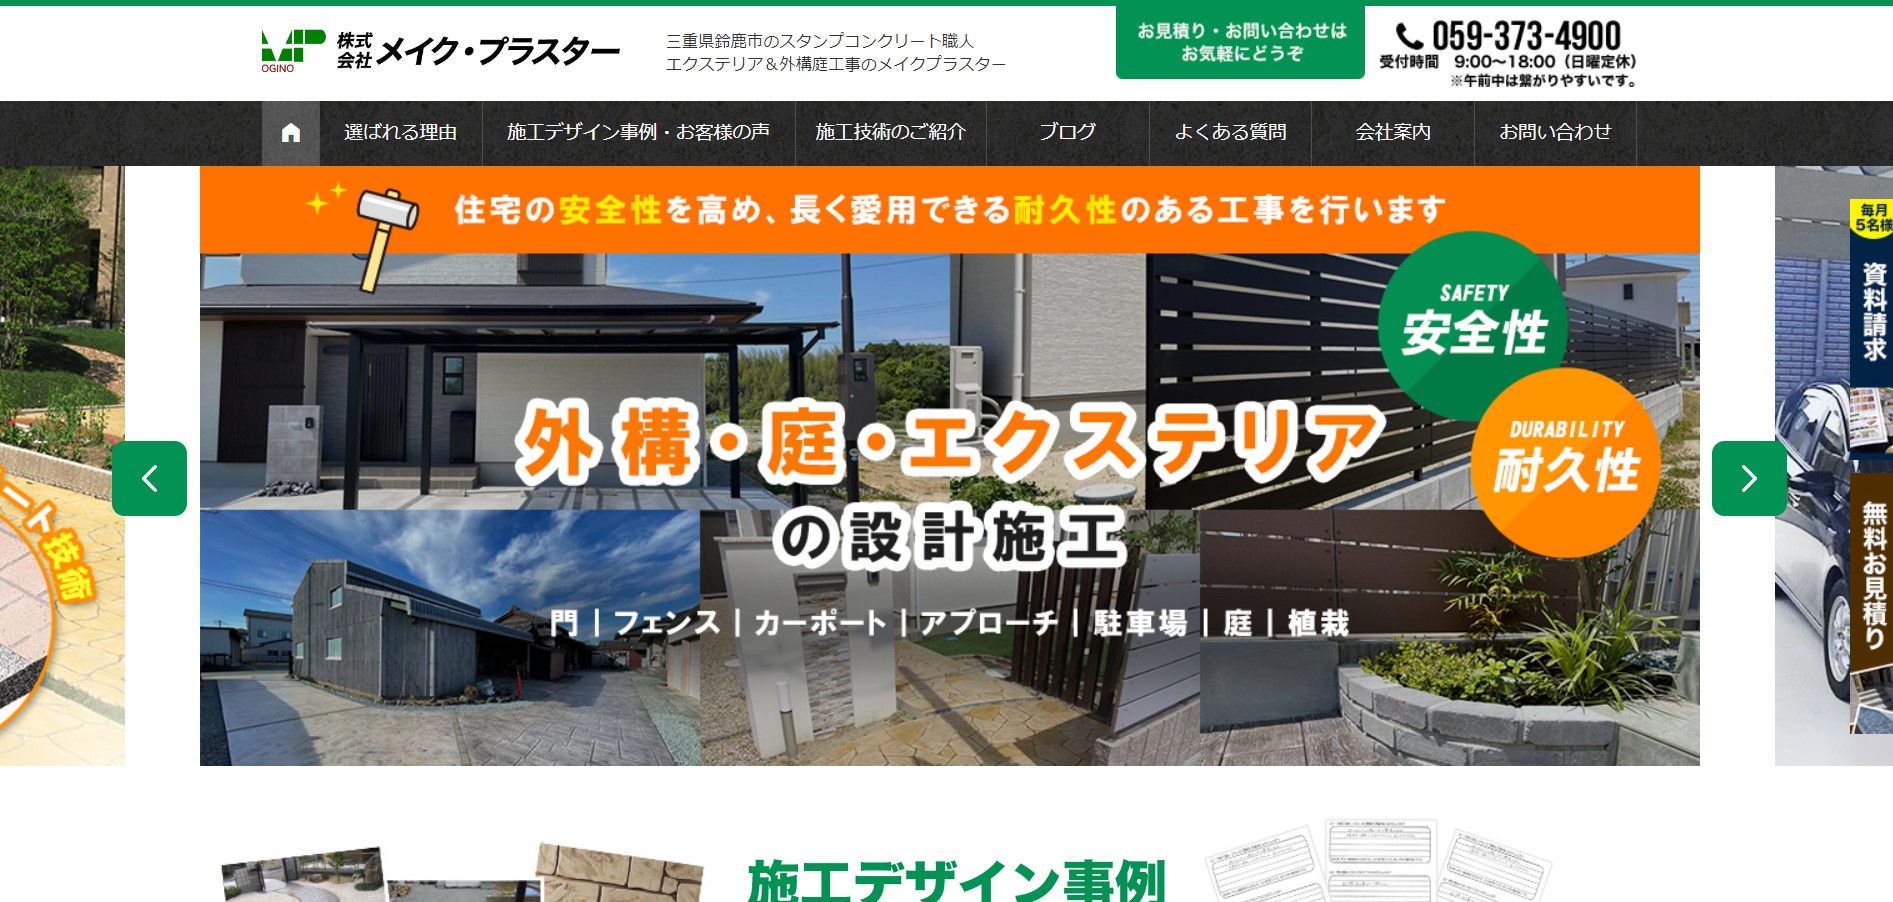 三重県で評判のおすすめ外構業者ランキング 第5位 株式会社メイク・プラスター